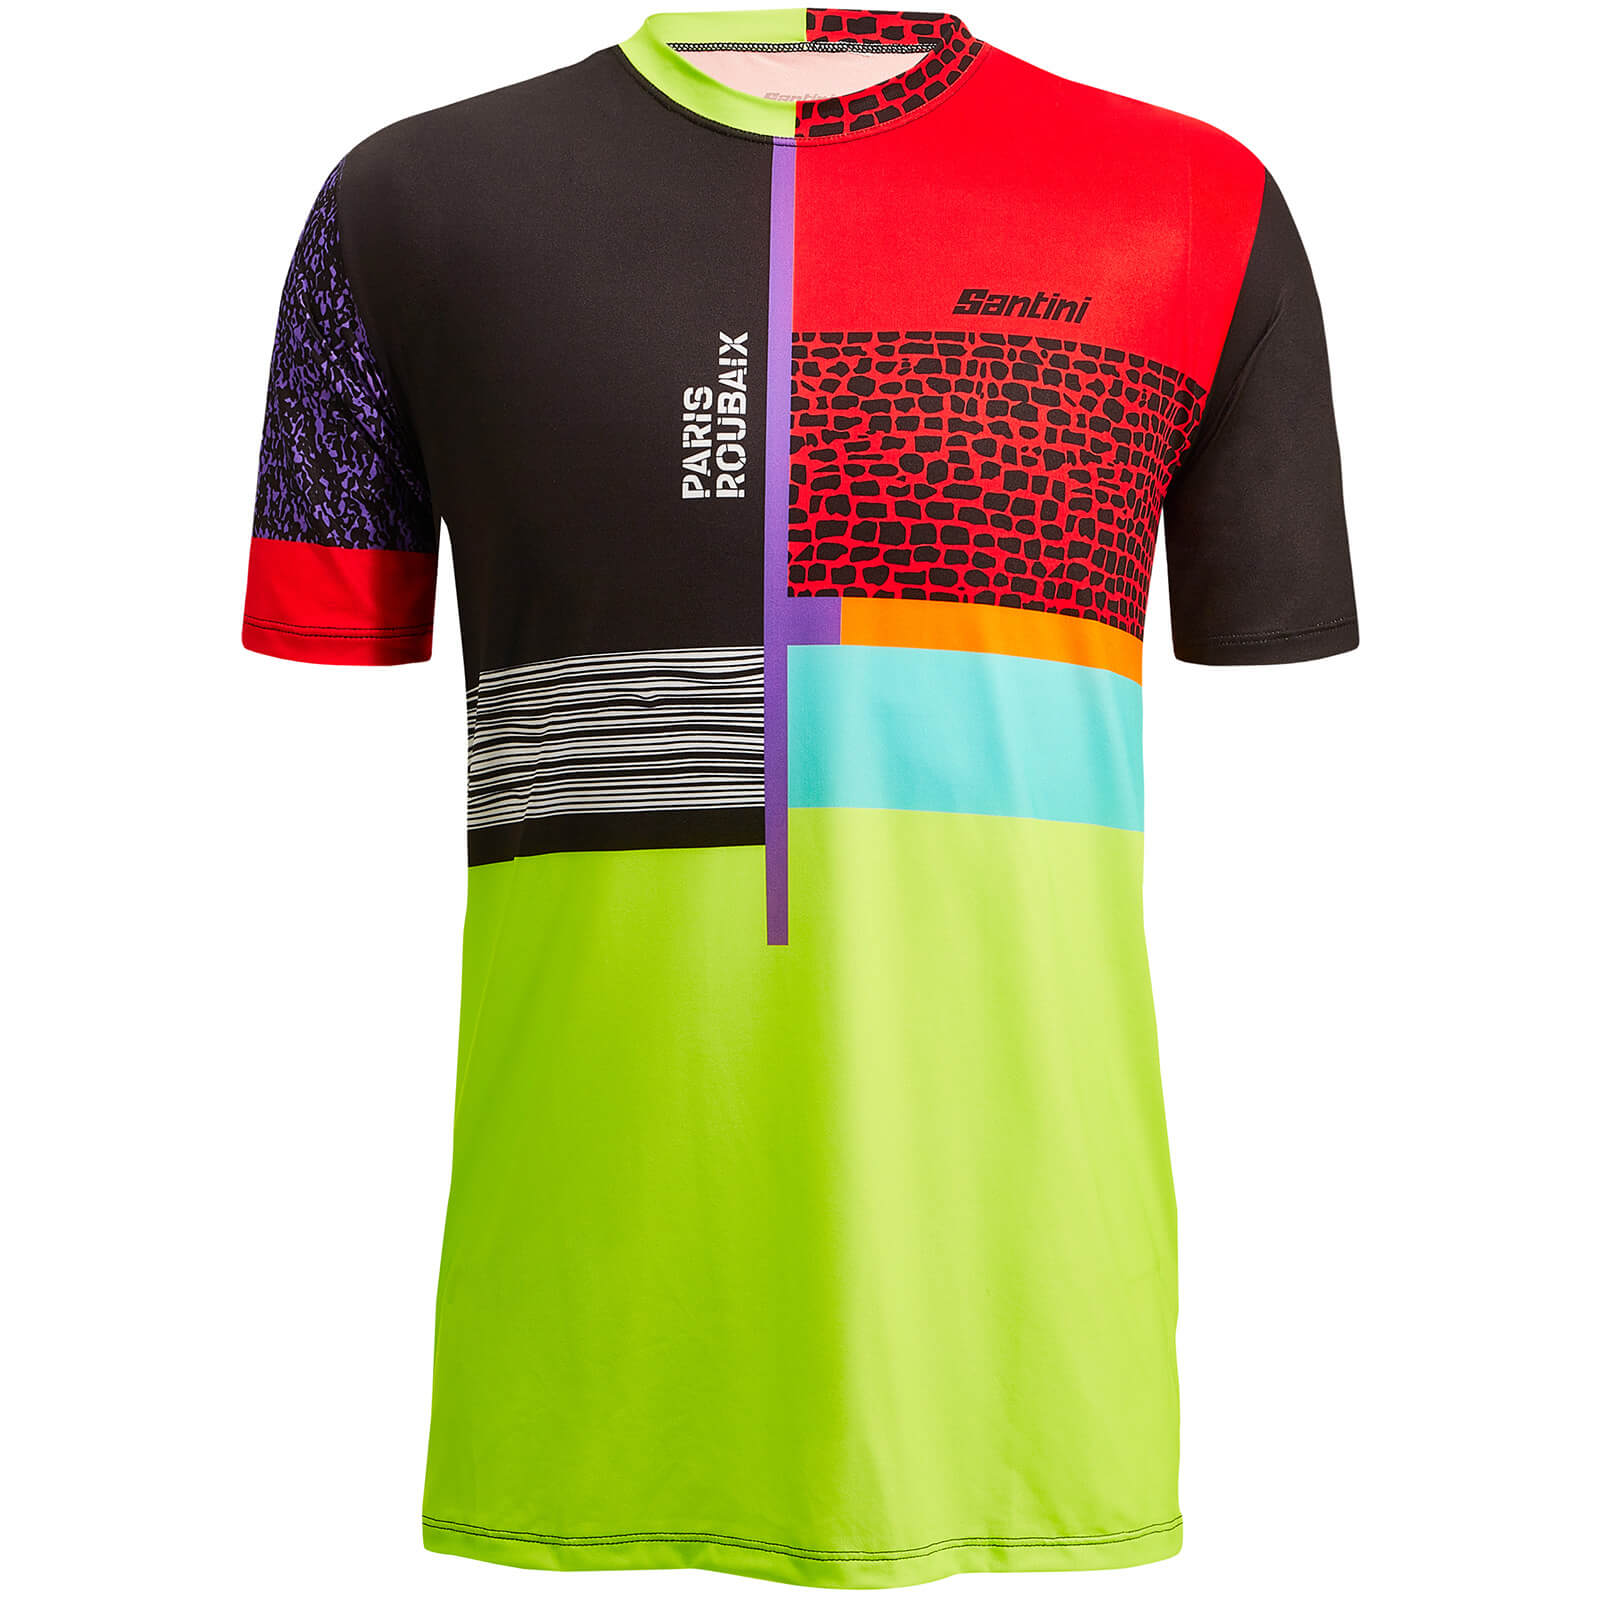 Santini Classics Collection Paris Roubaix Forger des Heroes T-Shirt - S